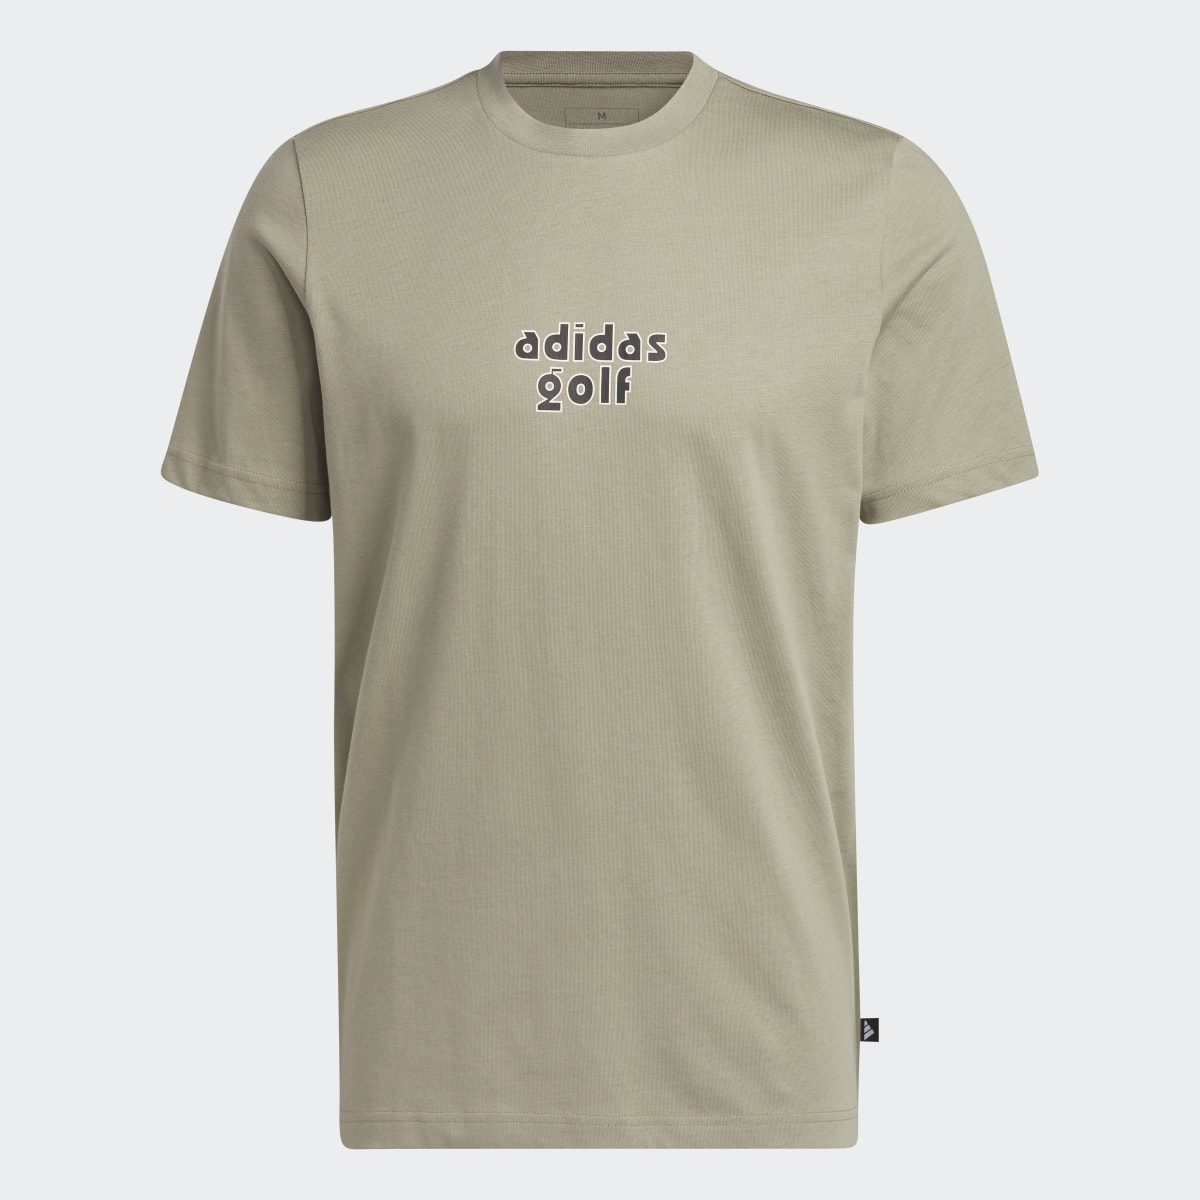 Adidas Camiseta Golf Graphic. 6